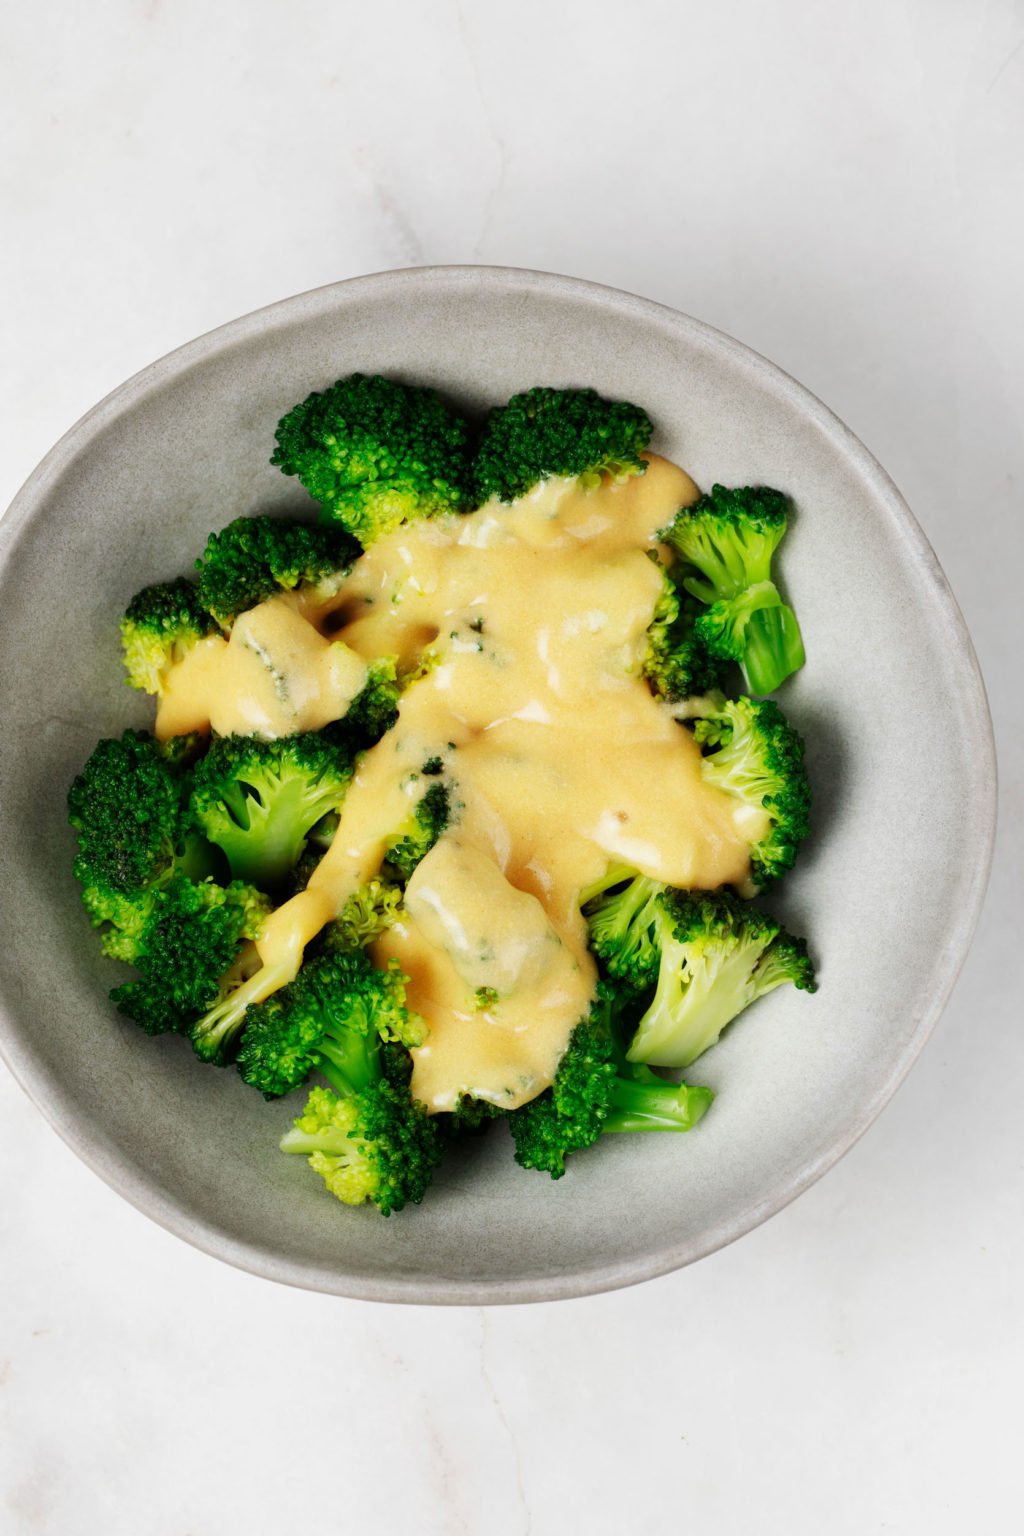 Un bol de brocoli cuit à la vapeur a été recouvert d'une sauce au fromage cheddar végétalien.